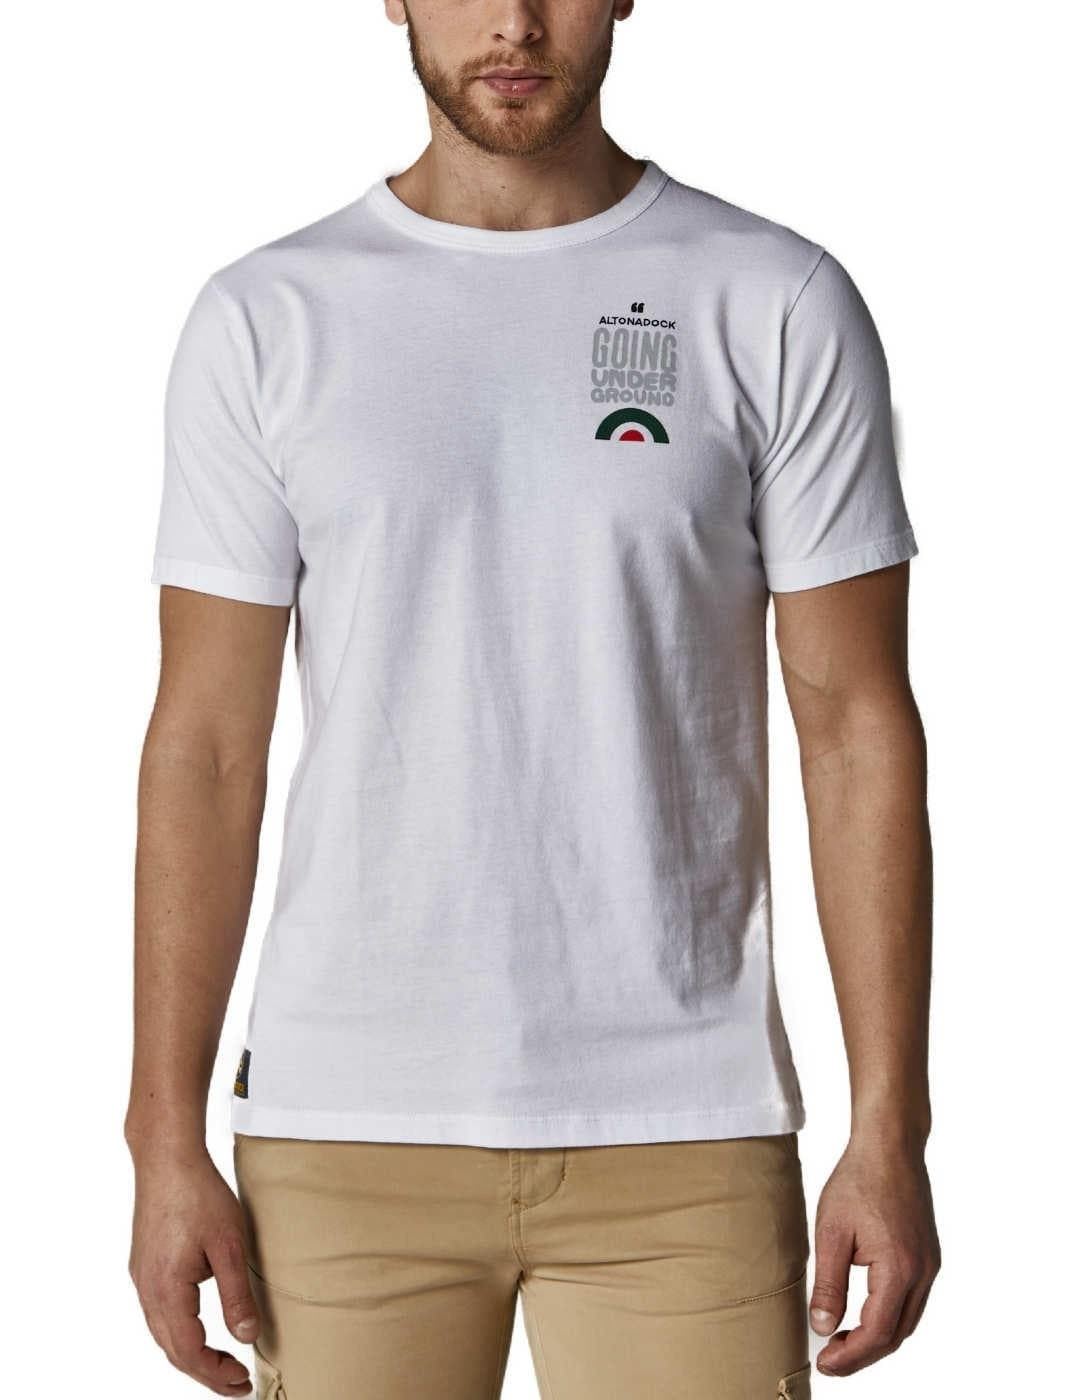 Camiseta Altonadock 104963 blanco - Imagen 1